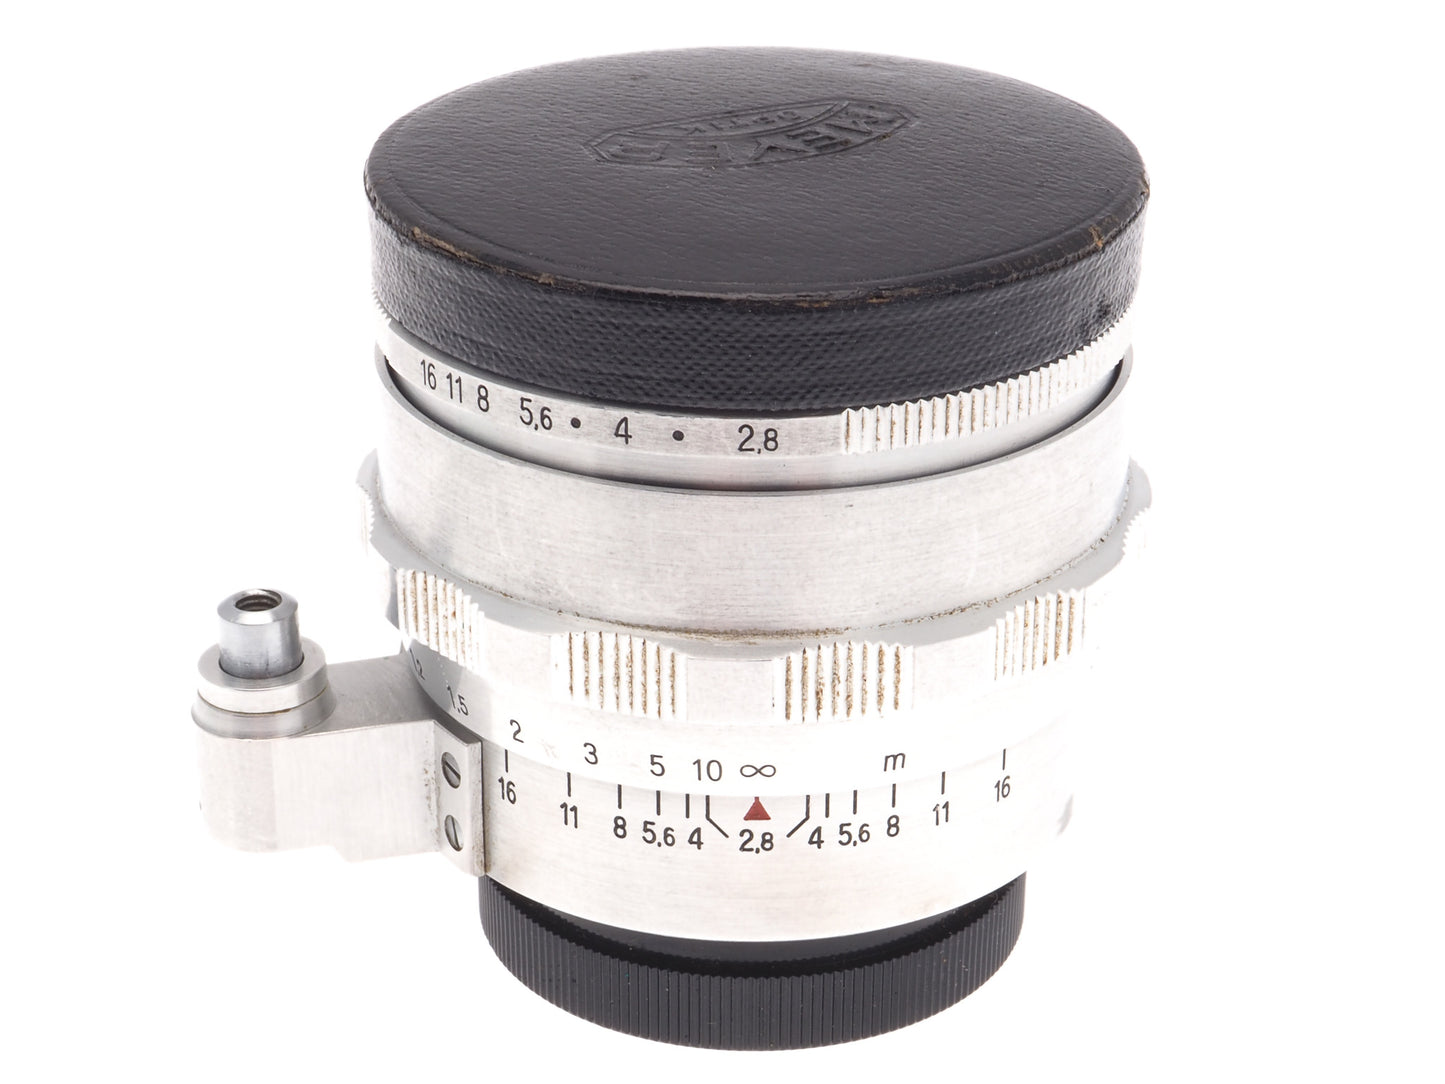 Carl Zeiss 35mm f2.8 T Flektogon Jena - Lens